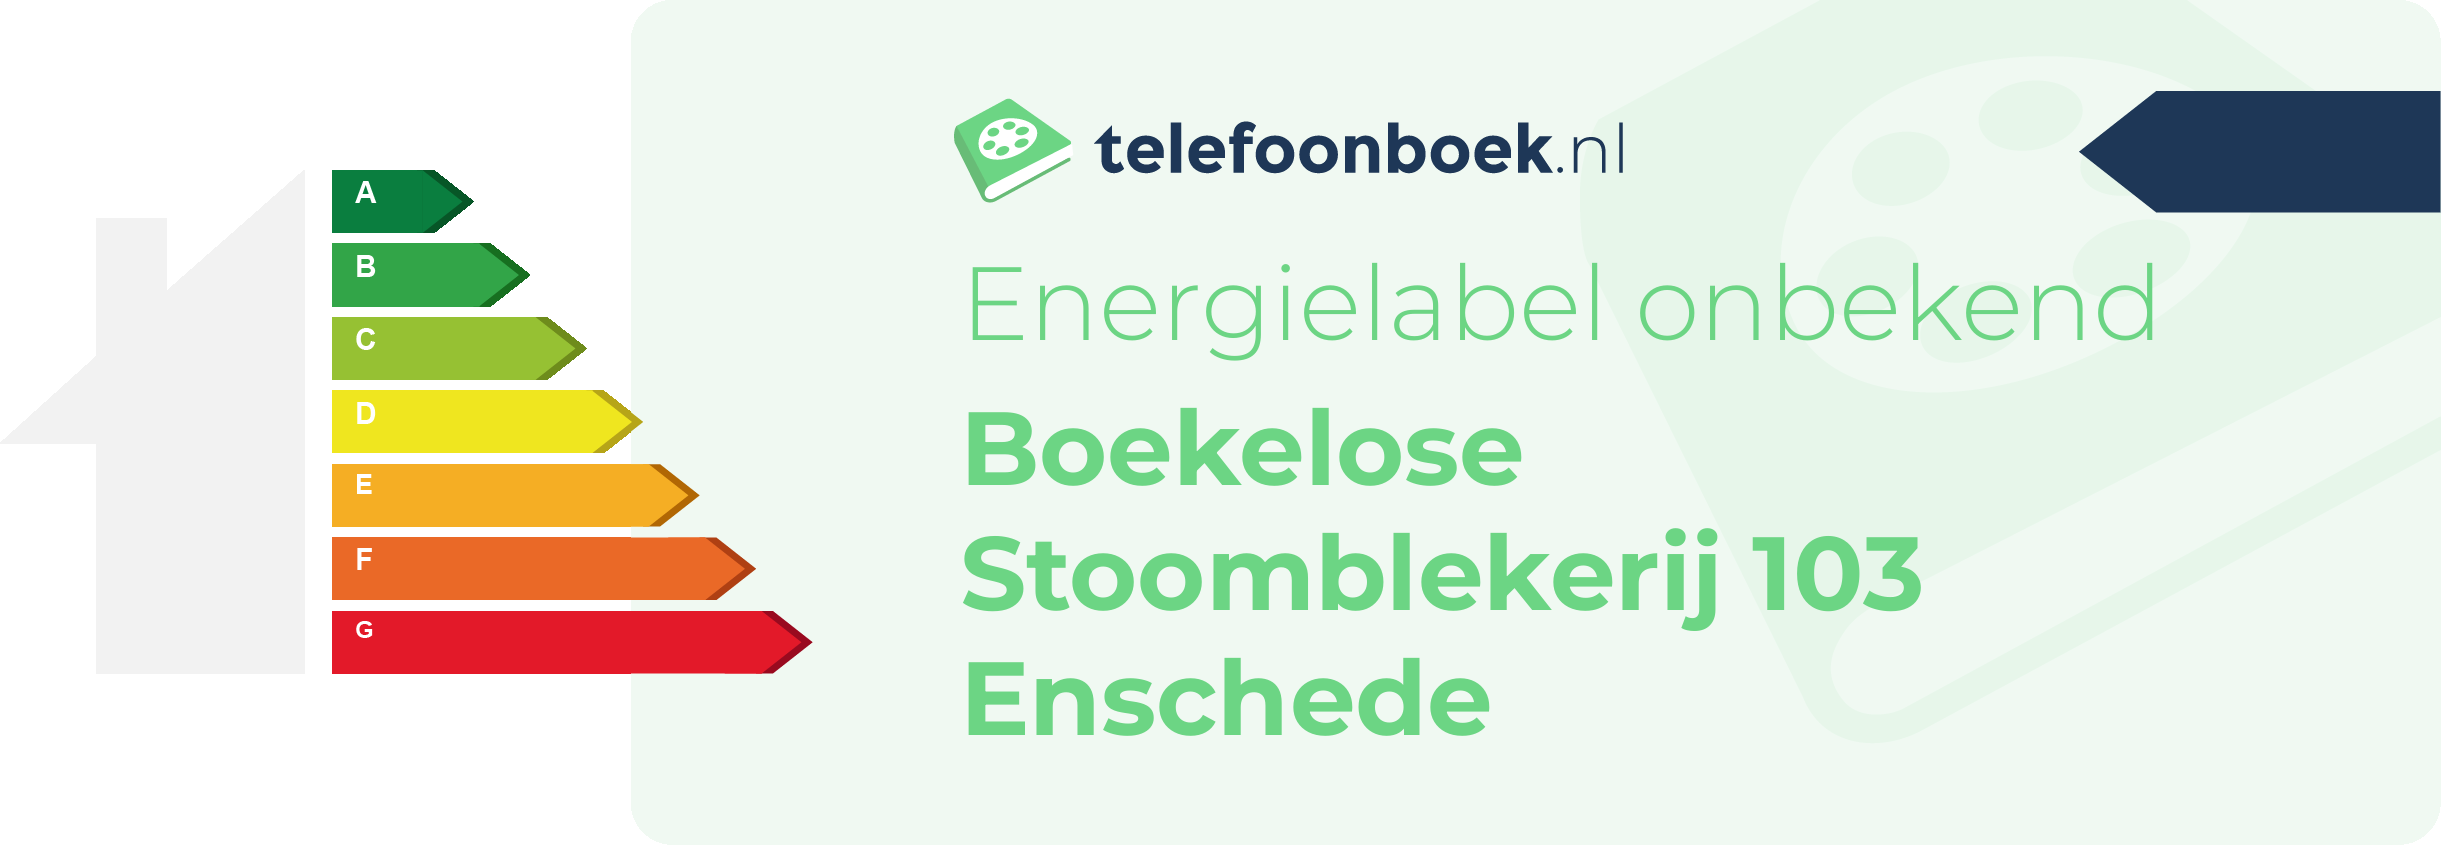 Energielabel Boekelose Stoomblekerij 103 Enschede